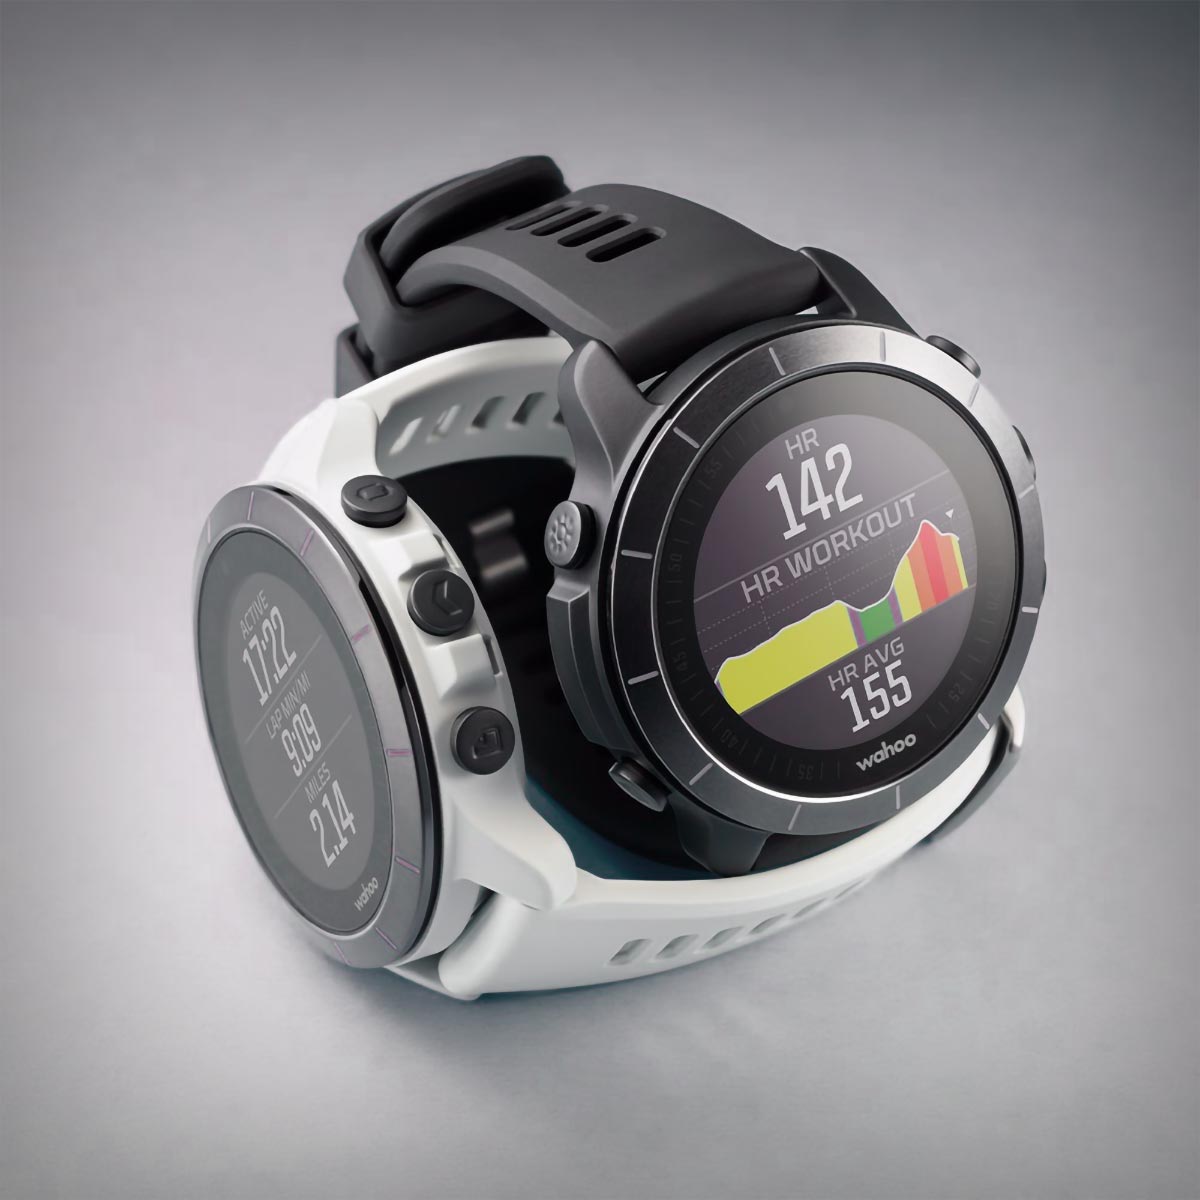 Cazando ofertas: el reloj multideportivo Wahoo ELEMNT Rival, a solo 99 euros en la web del fabricante